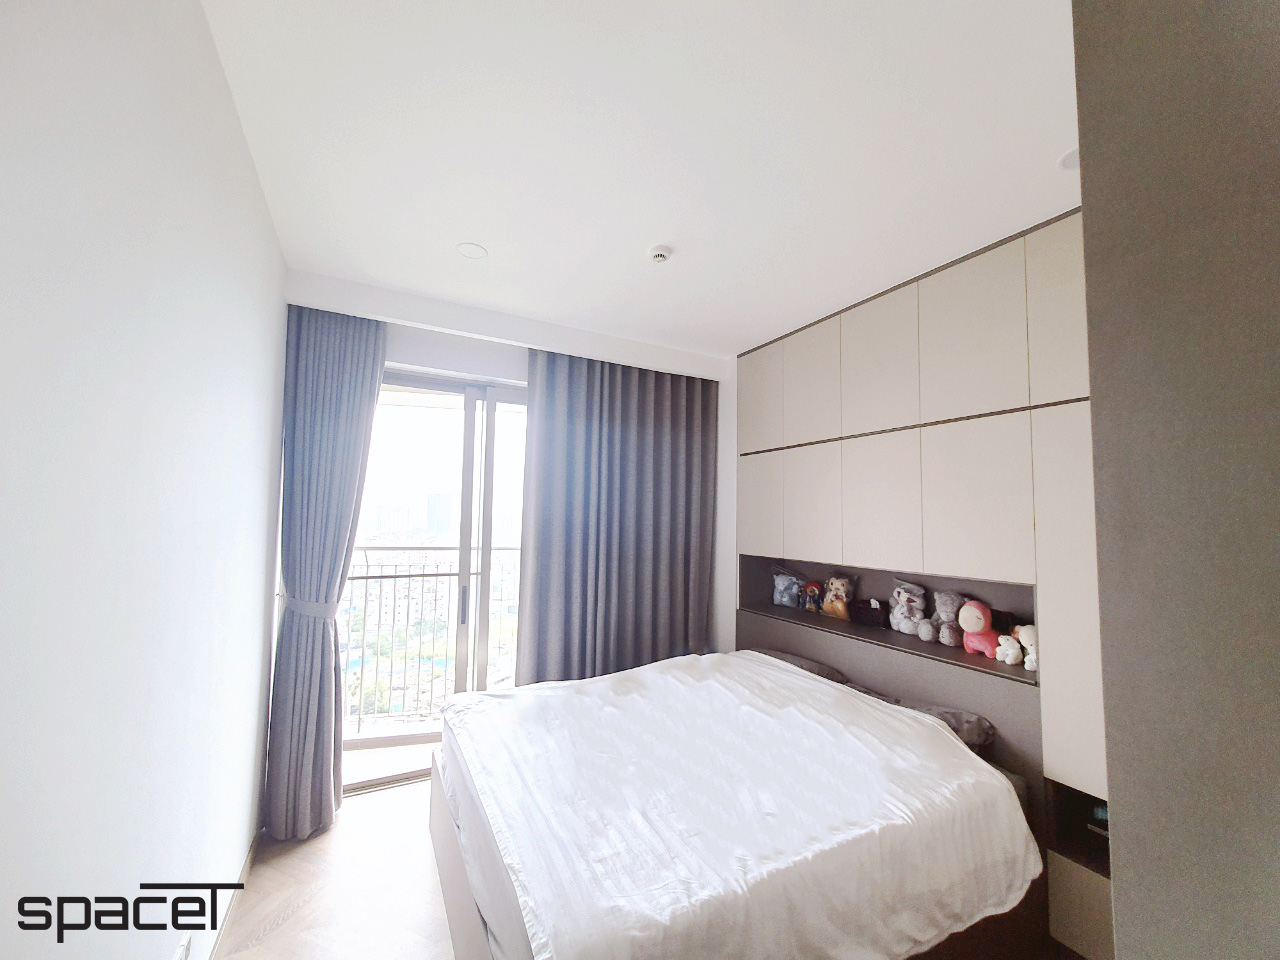 Hoàn thiện nội thất phòng ngủ Căn hộ The Peak M8 Midtown phong cách Tối giản Minimalist